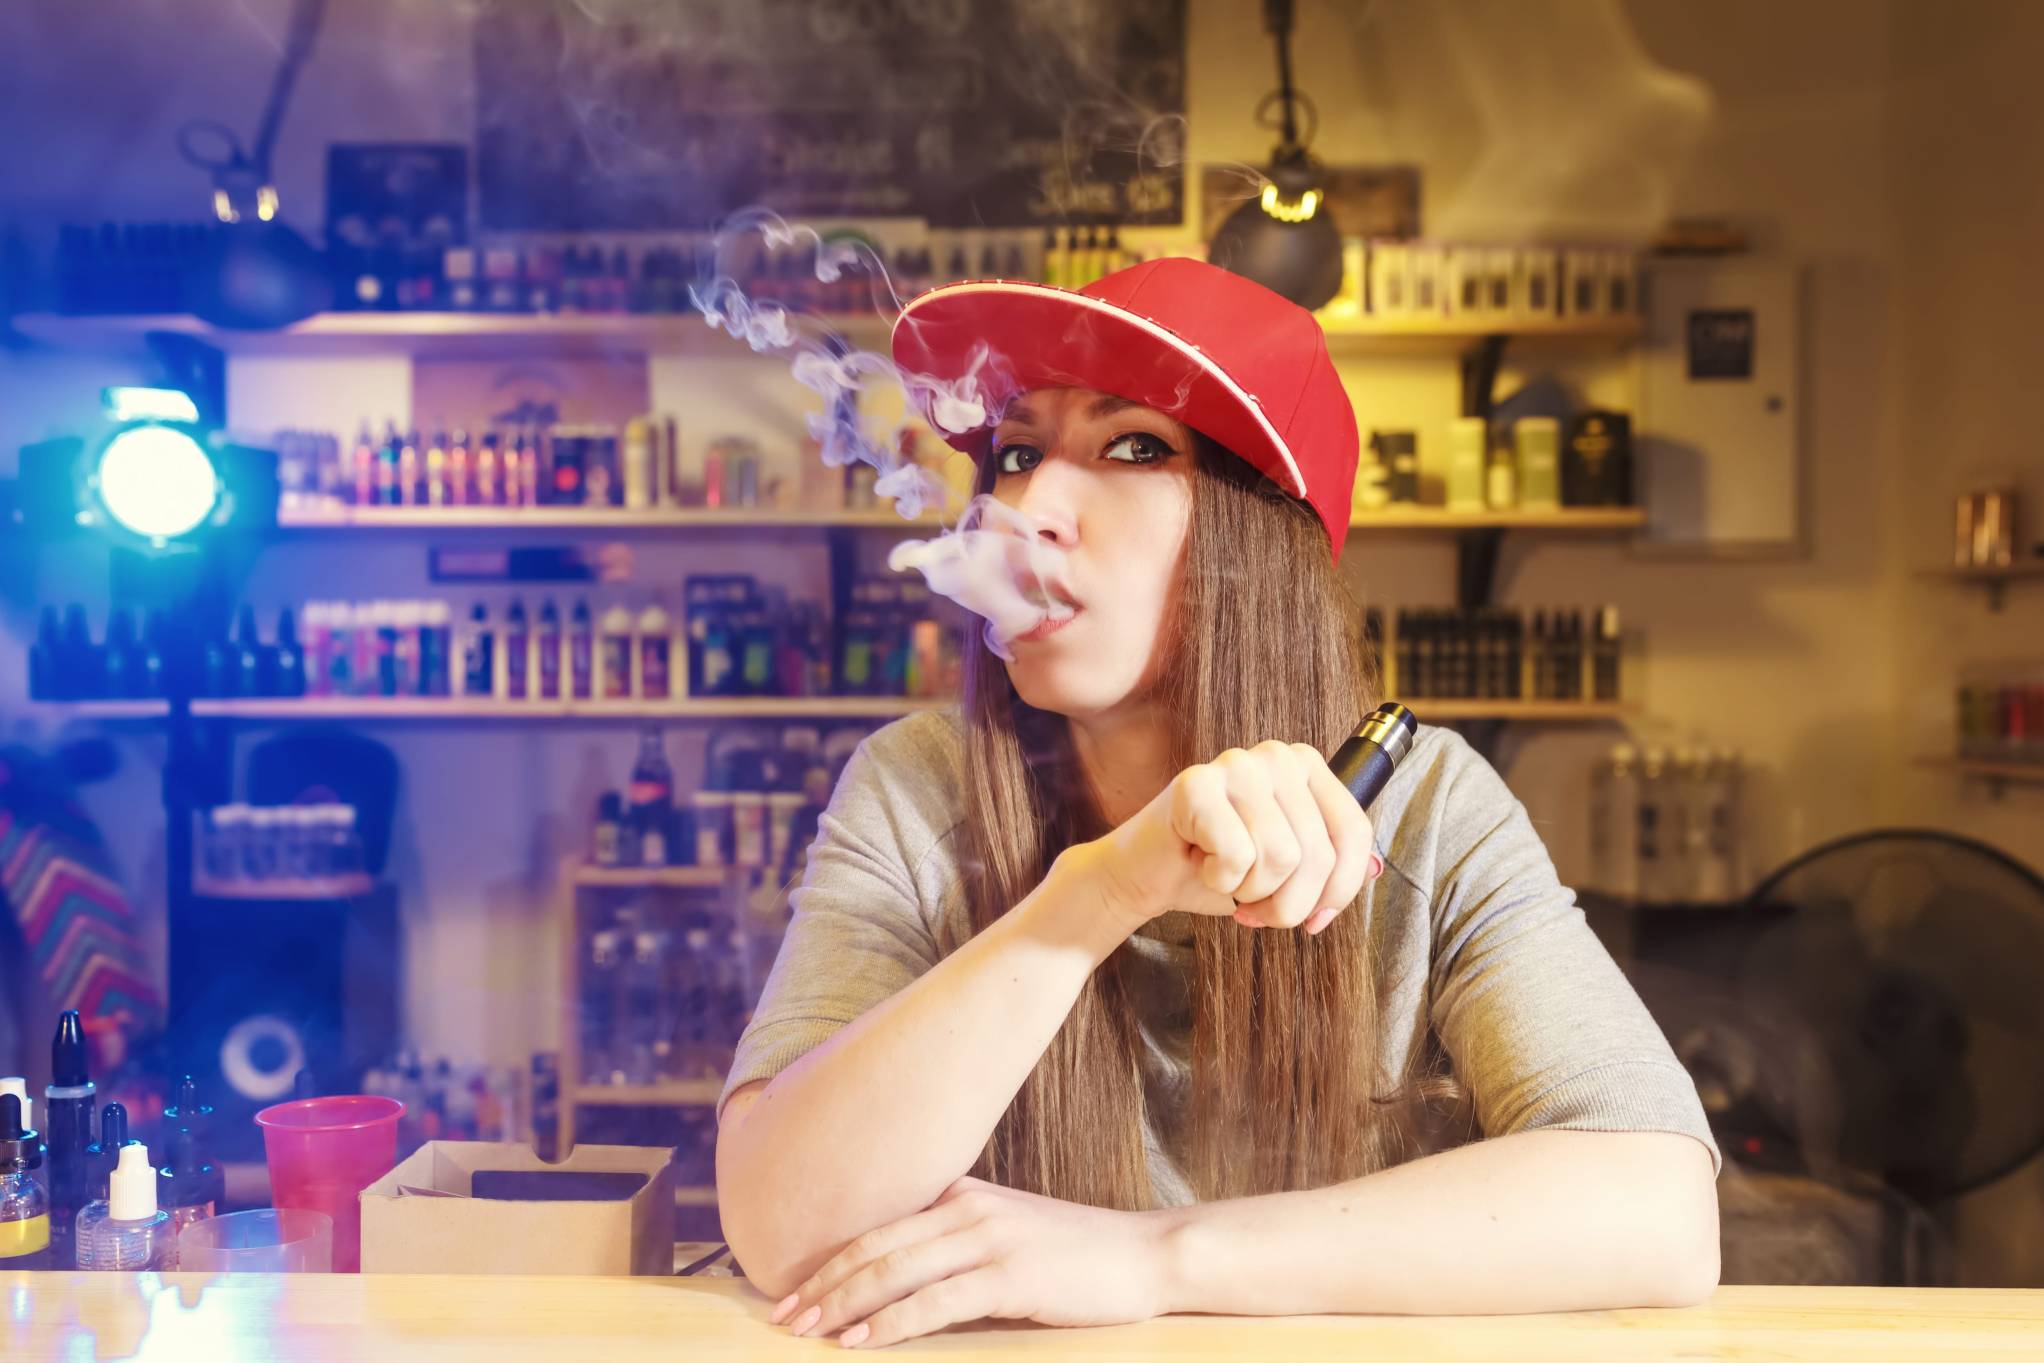 Smoke shop física de profuctos para vapear y fumar donde una mujer joven vapea.